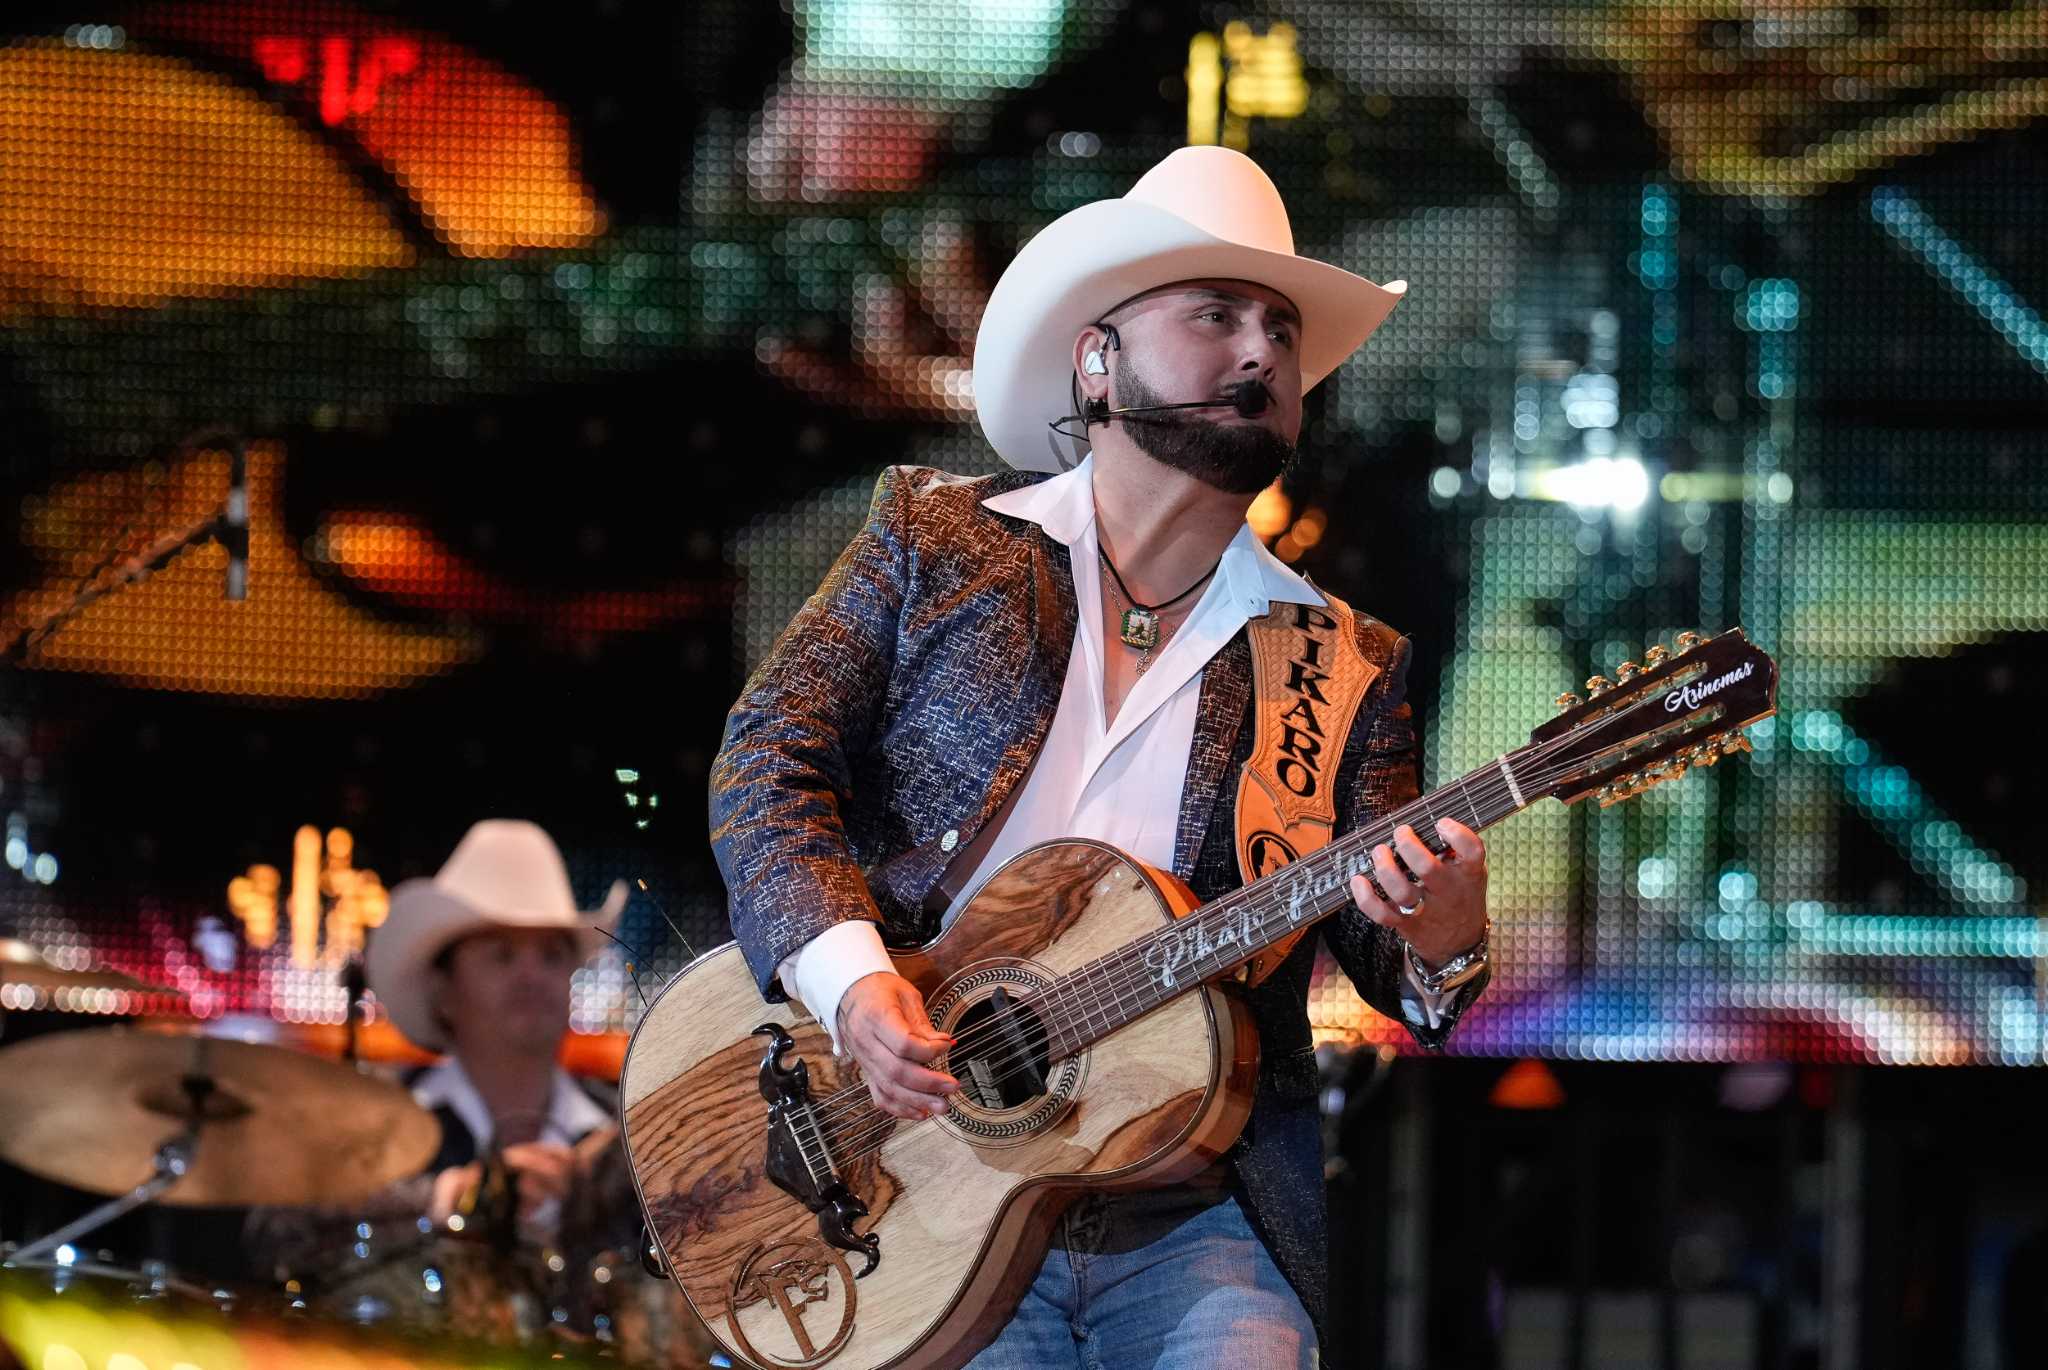 La Fiera de Ojinaga draws 71K for Go Tejano Day at the Houston Rodeo